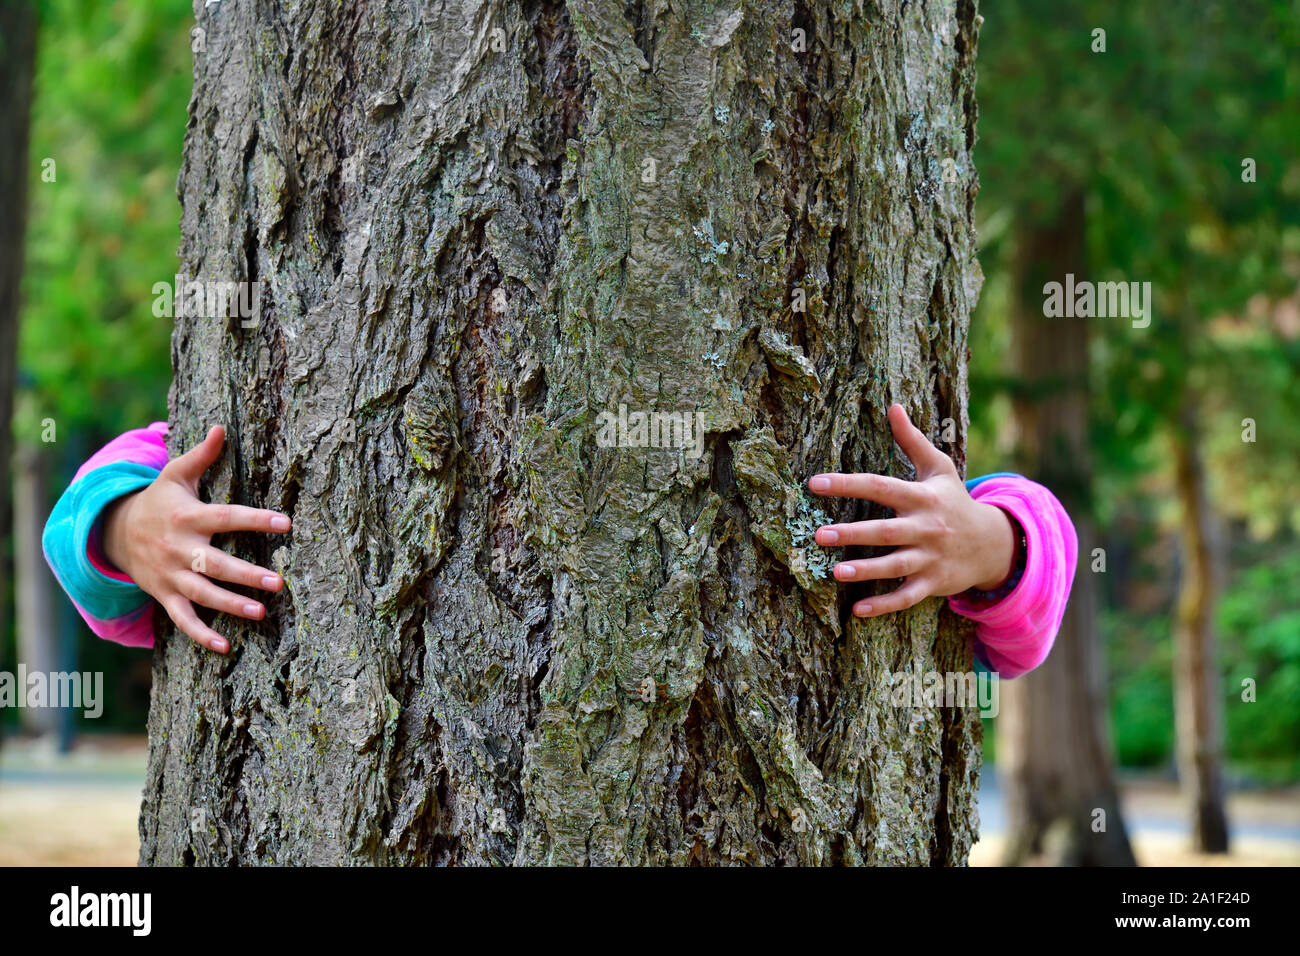 Eine Person in farbenfroher Kleidung mit ihren Armen um den Stamm eines großen Baumes gewickelt, der wild auf Vancouver Island British Columbia Canada wächst. Stockfoto